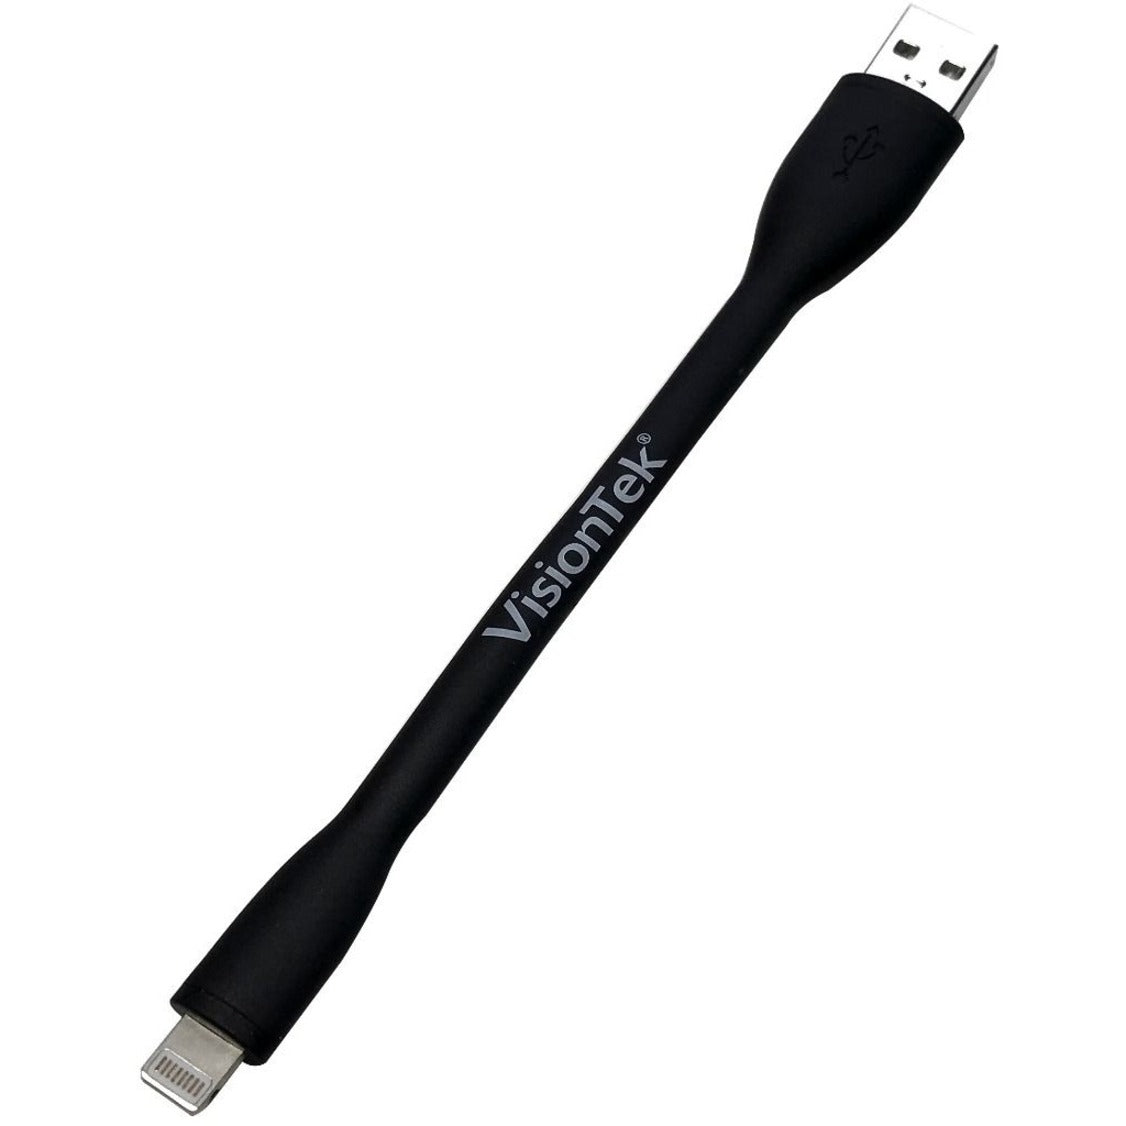 VisionTek Lightning to USB Flex Cable - Black (901096)